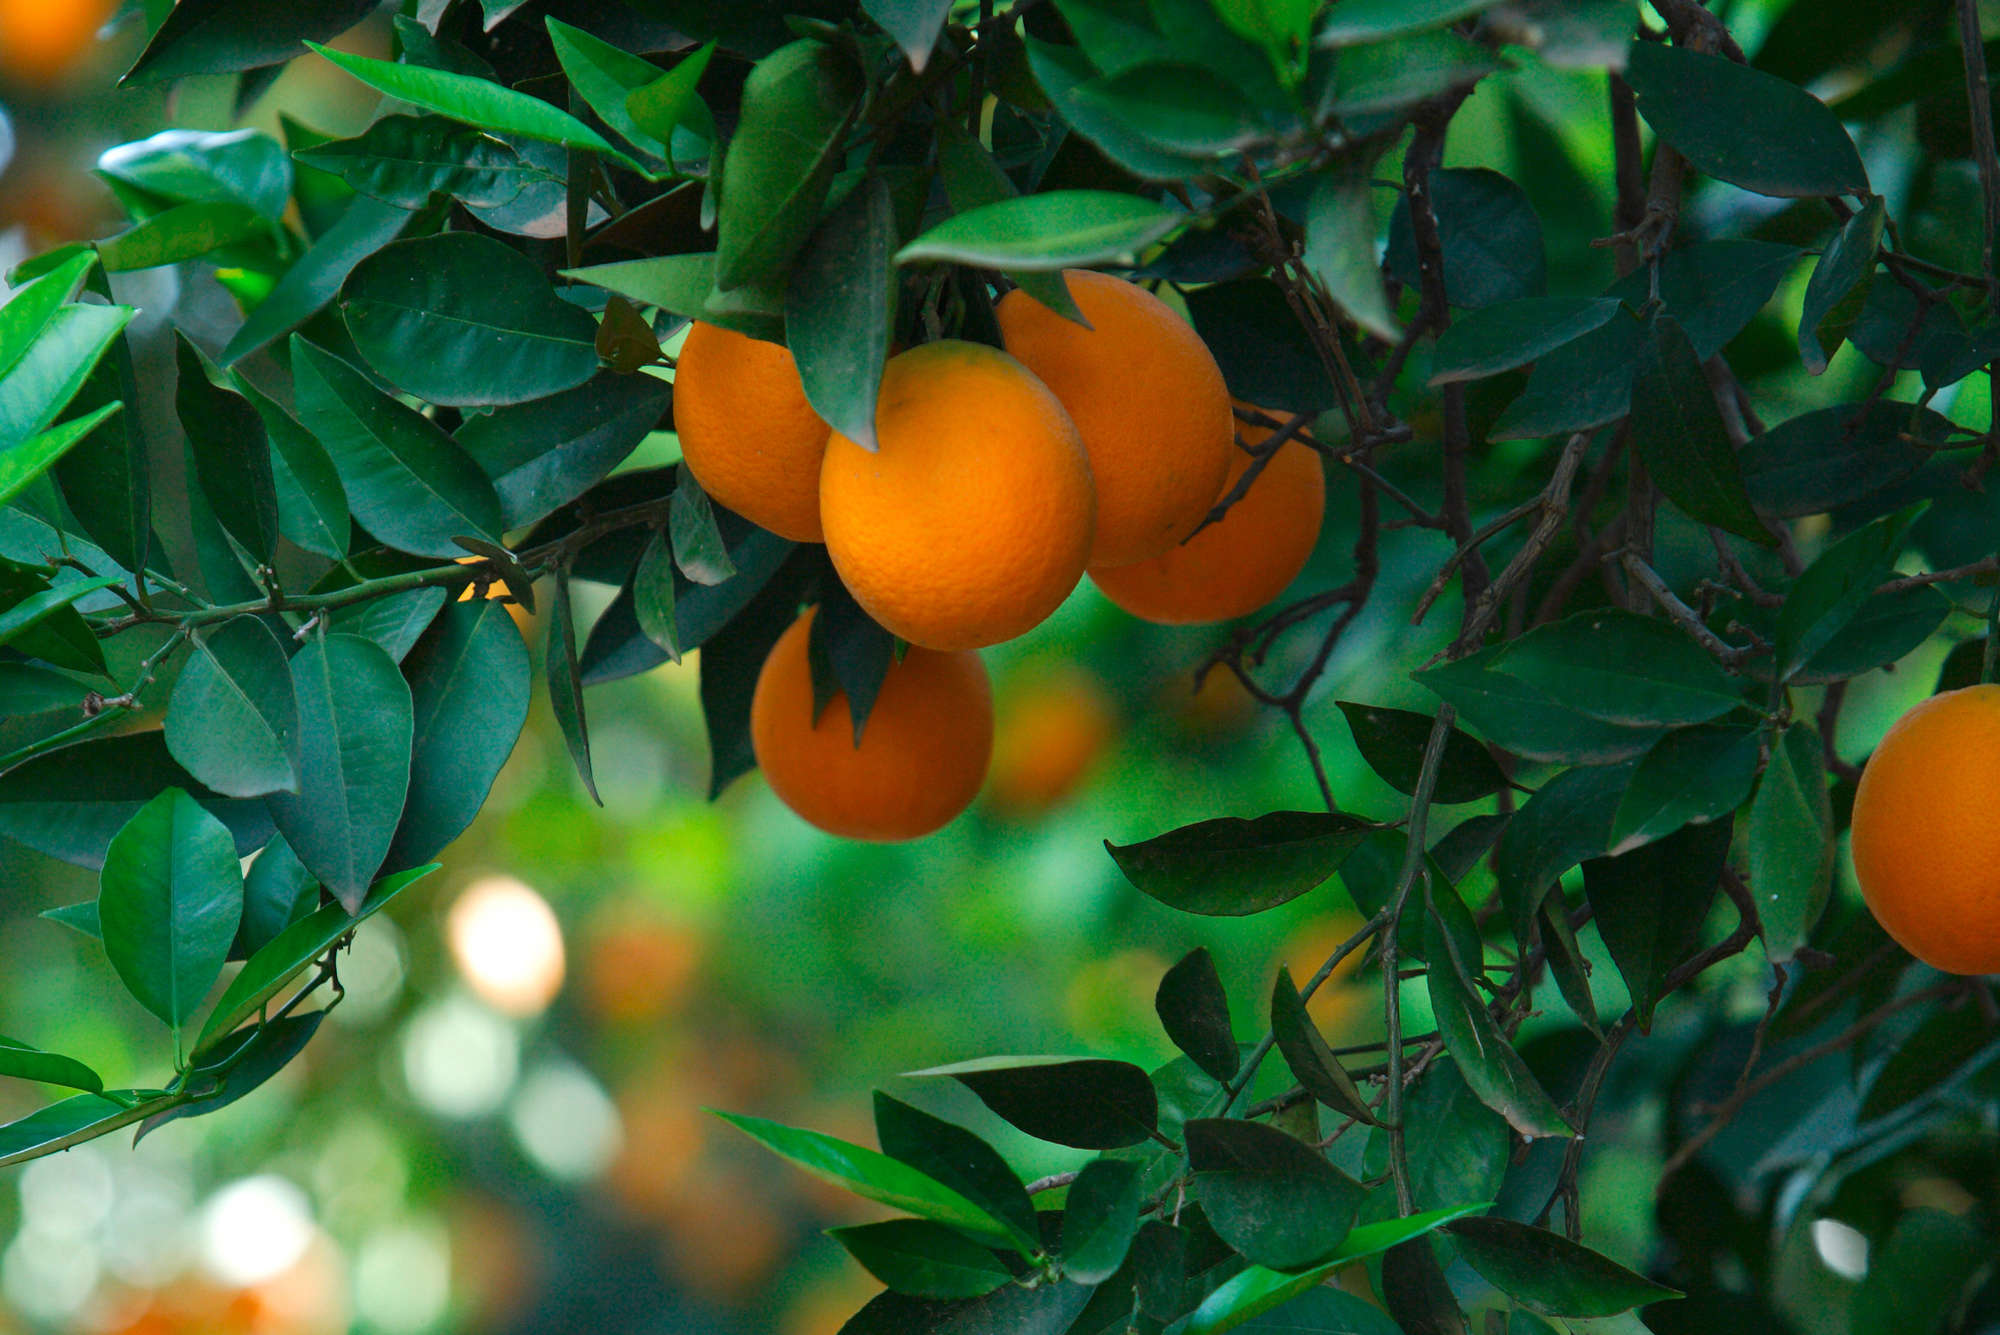             Fototapete Baum mit Früchten – Perlmutt Glattvlies
        